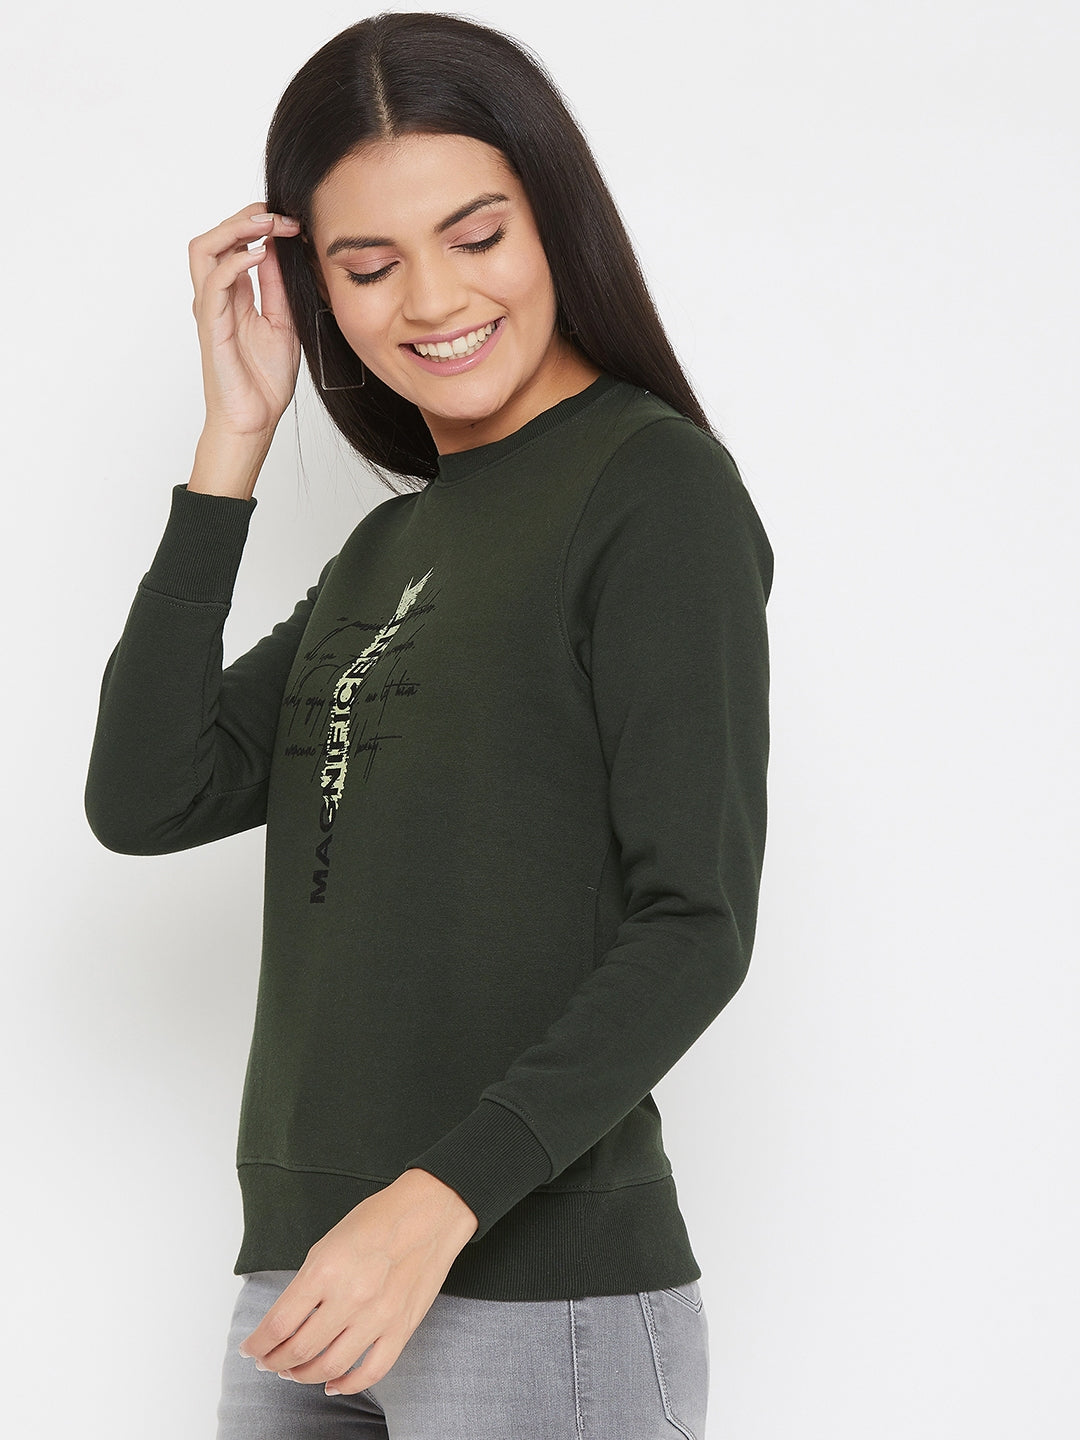 Olive Printed Round Neck Sweatshirt - Women Sweatshirts